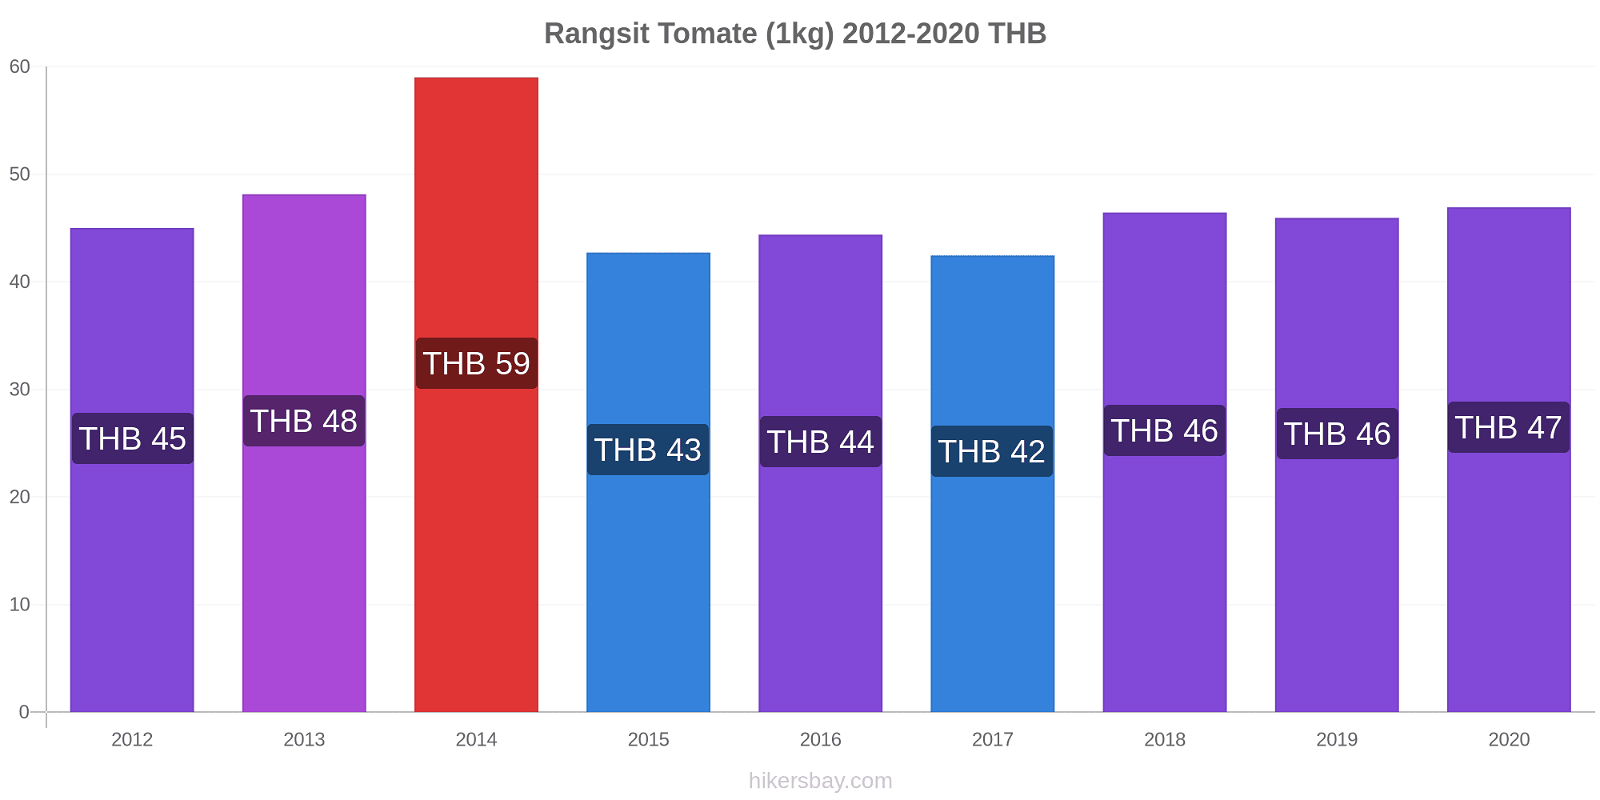 Rangsit cambios de precios Tomate (1kg) hikersbay.com